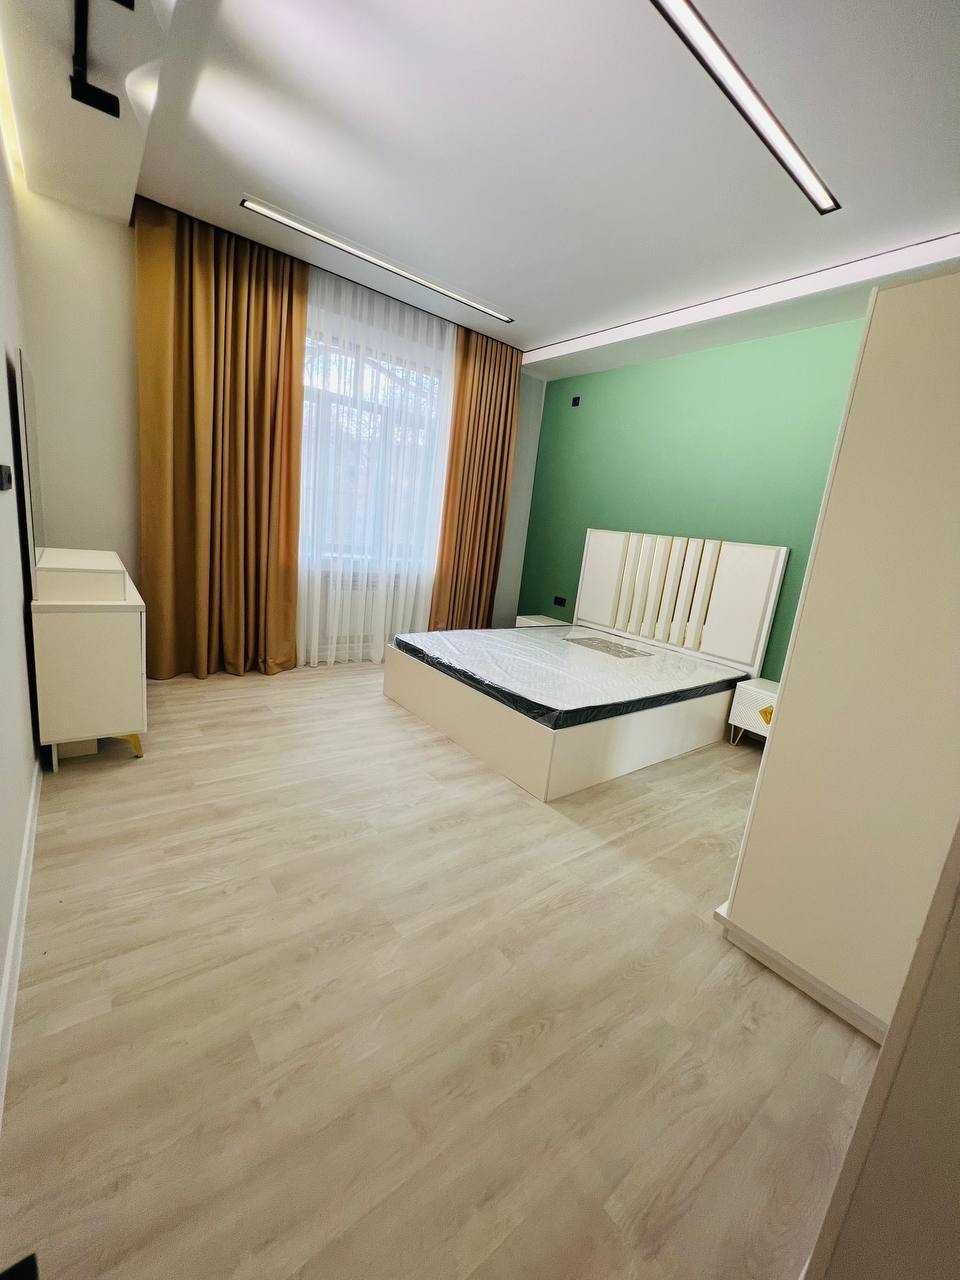 Продается квартира с шикарным свежим ремонтом в сердцевина Ташкента!